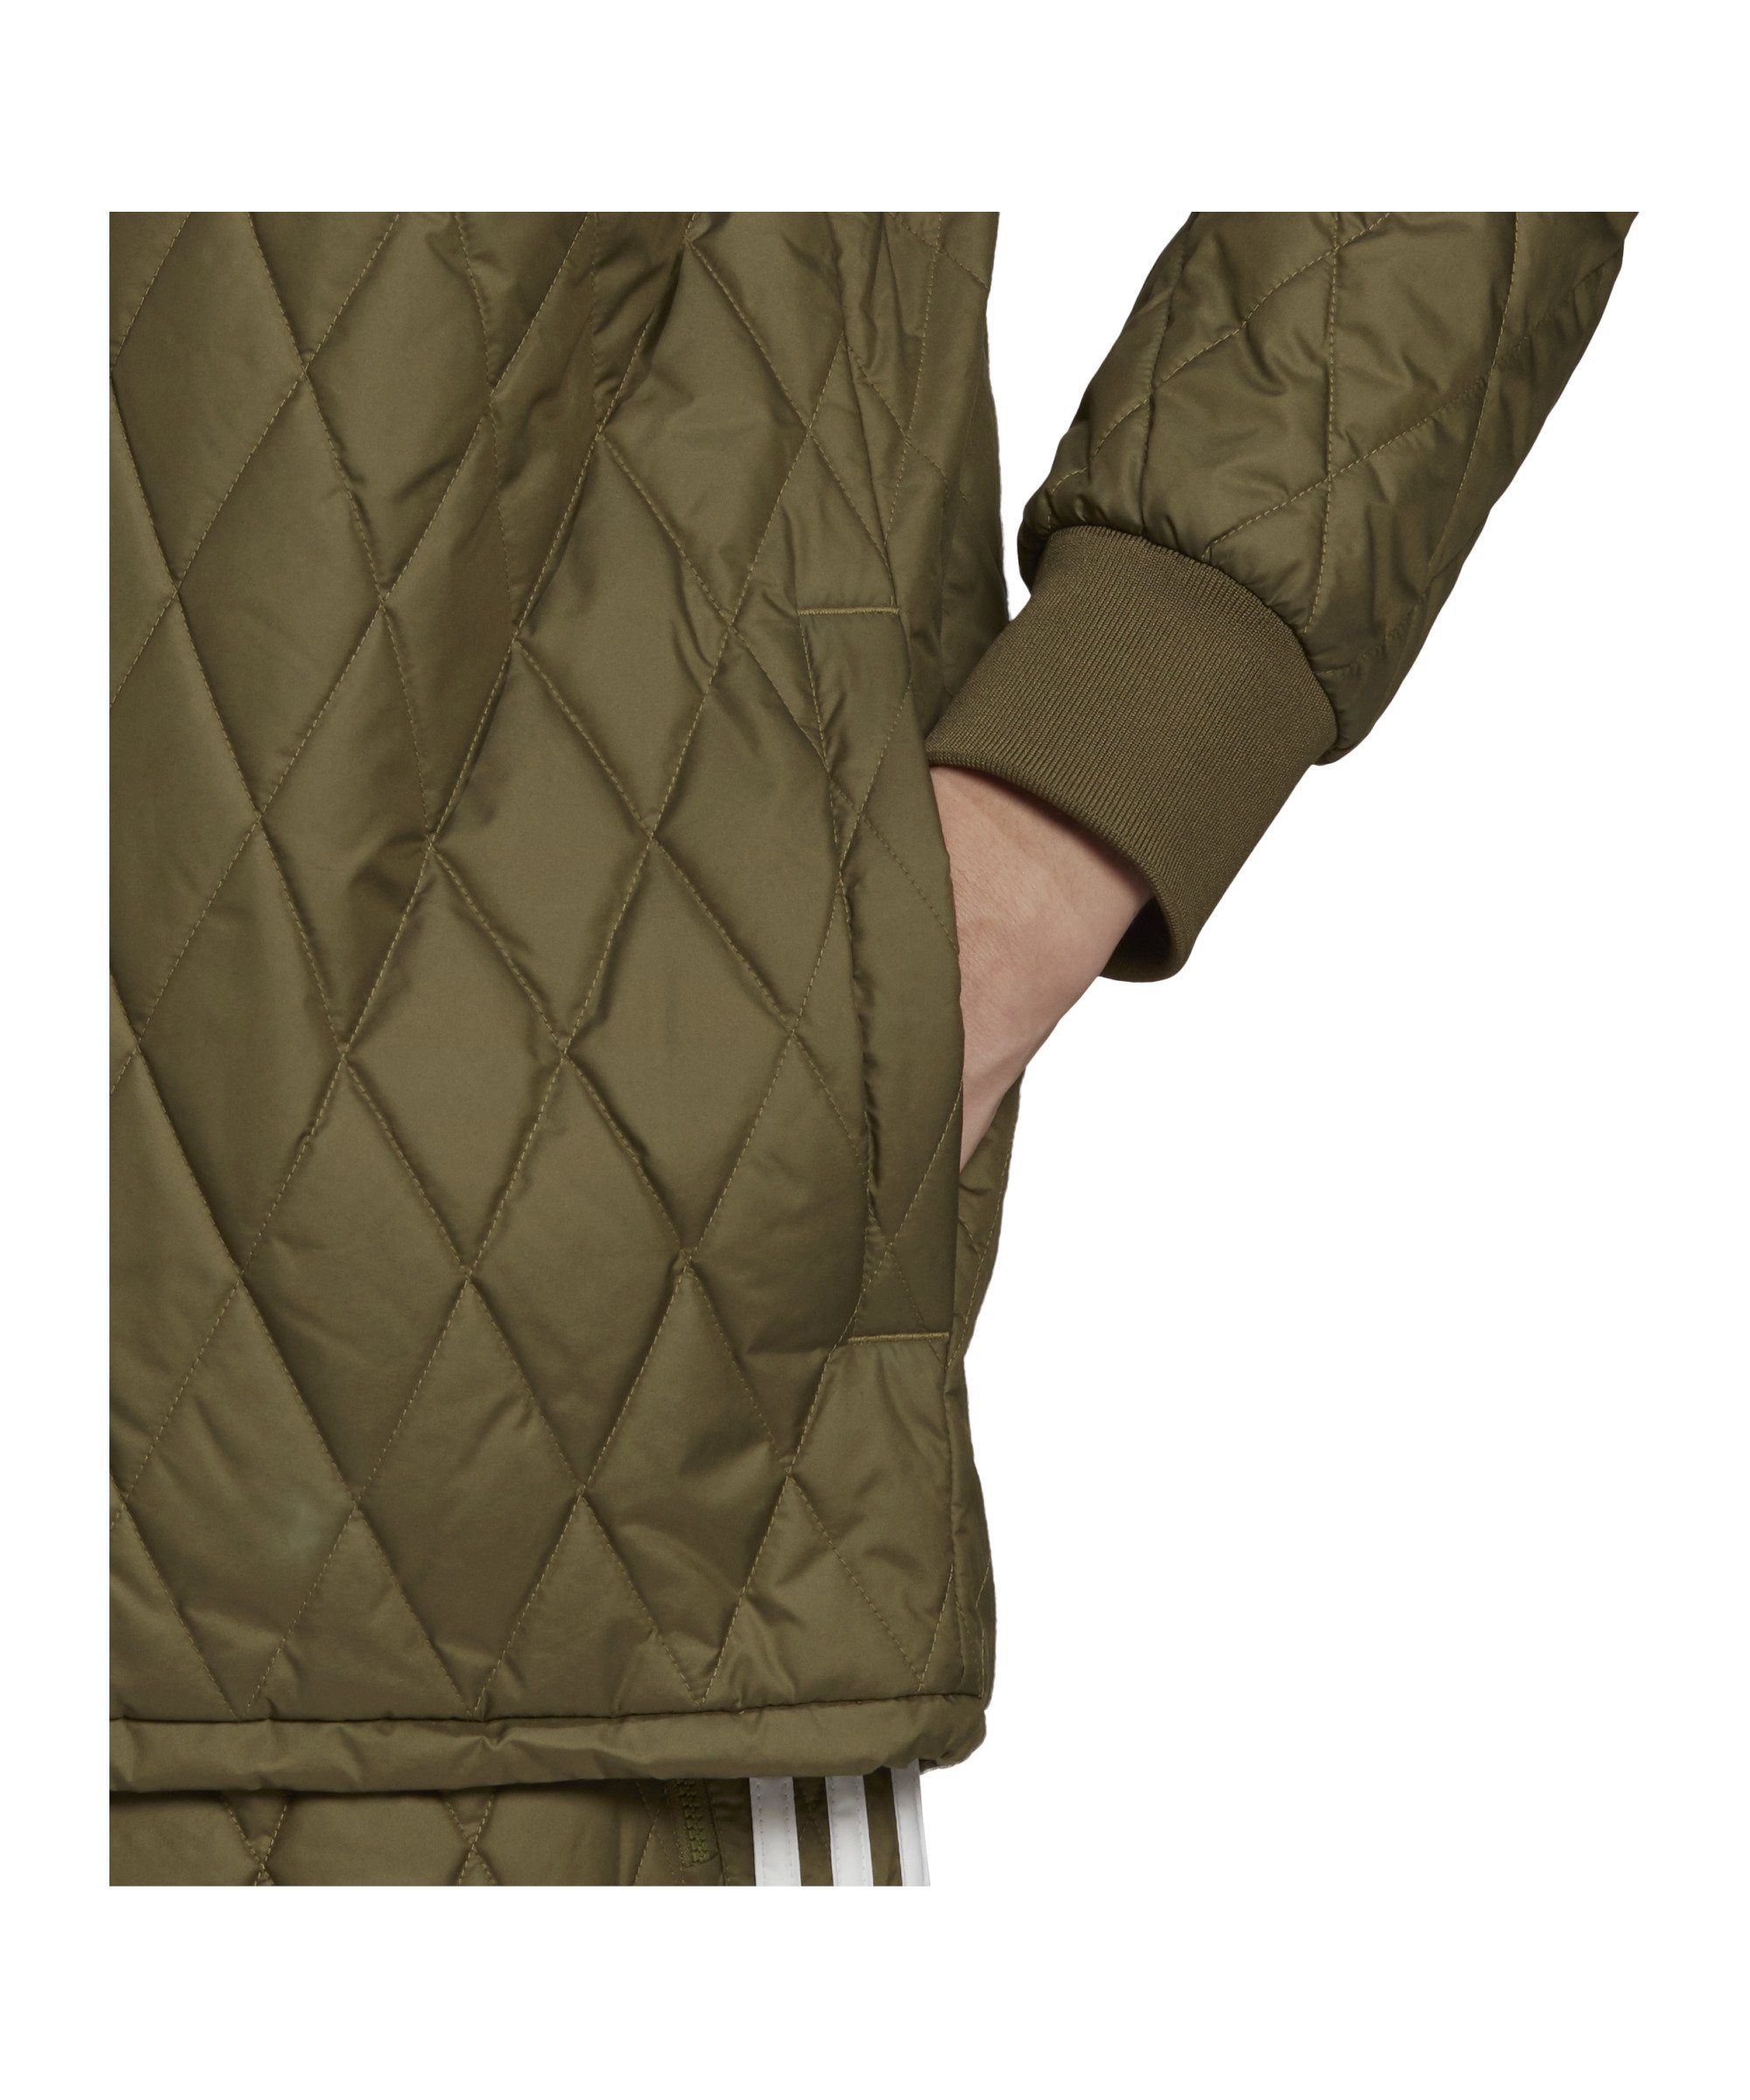 Quilted AR gruen Sweatjacke Originals Jacke adidas